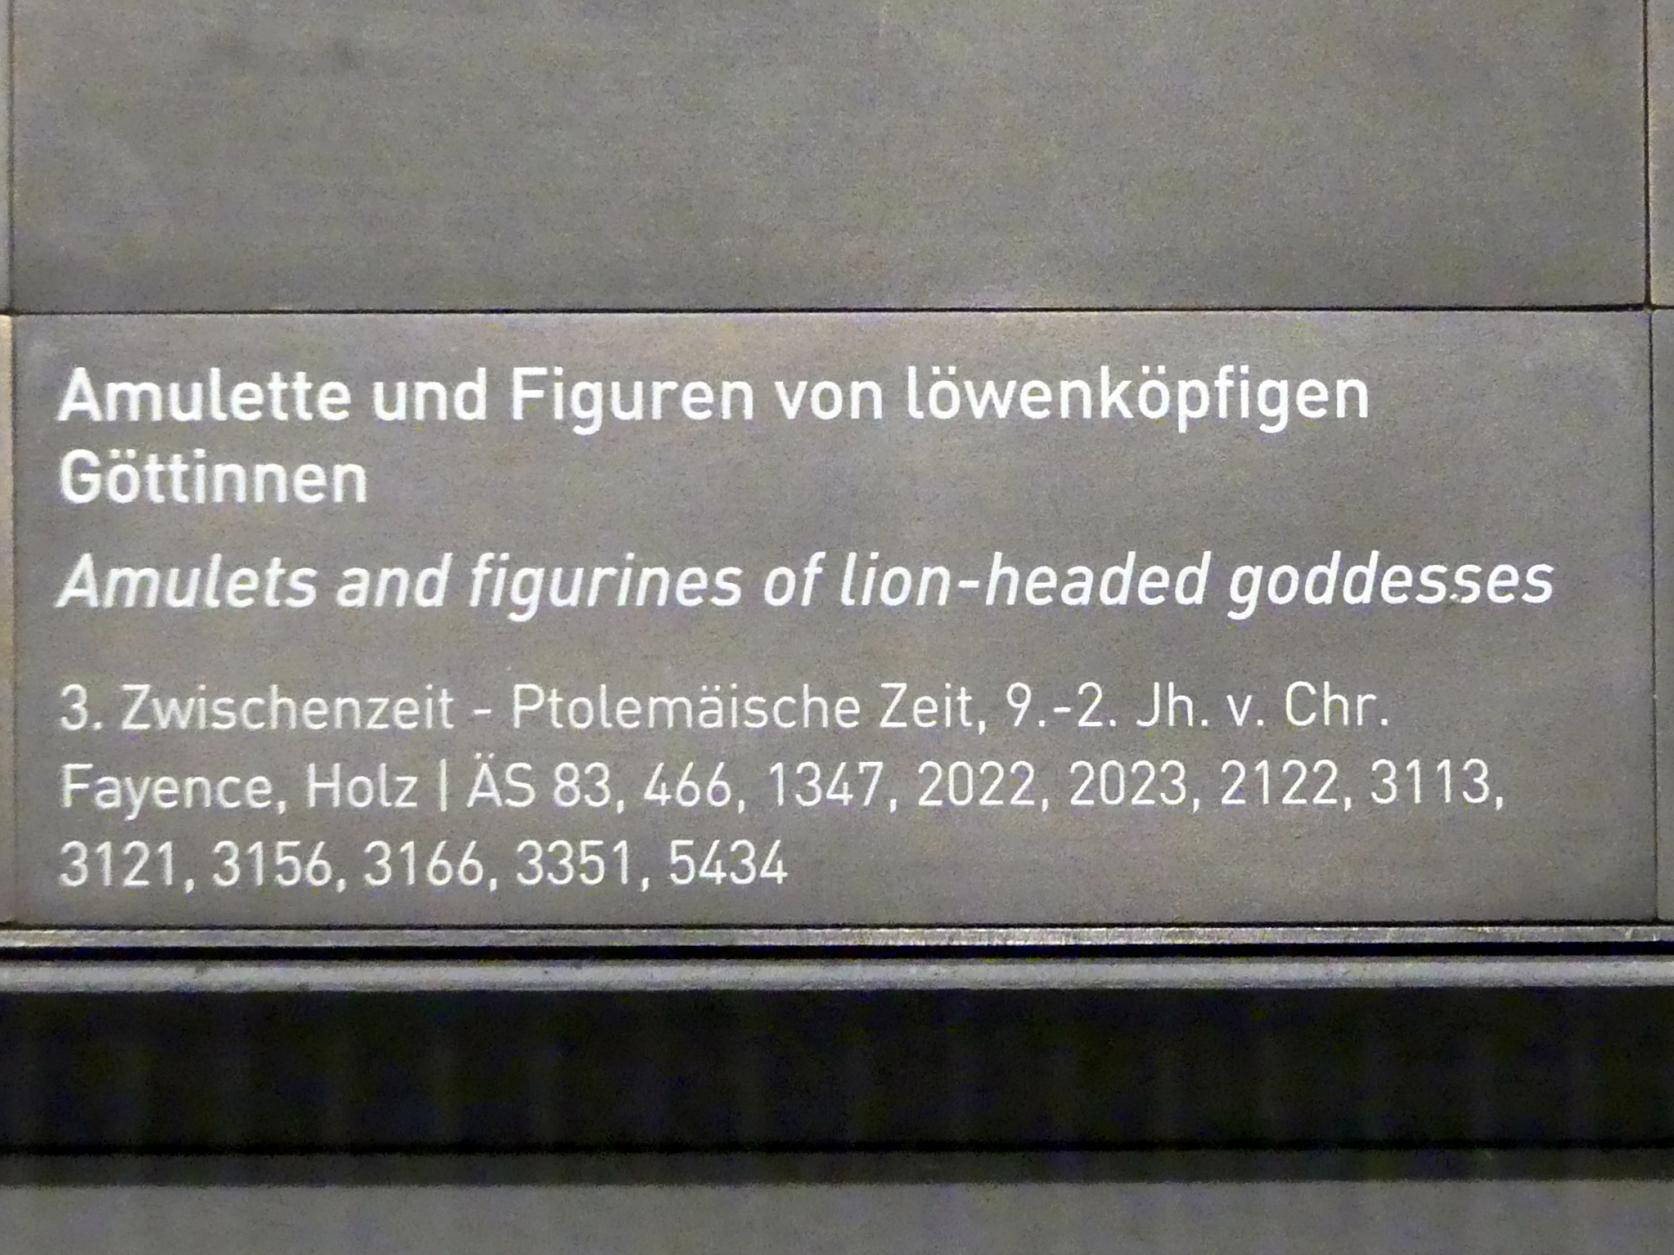 Amulette und Figuren von löwenköpfigen Göttinnen, 900 - 100 v. Chr., Bild 7/7